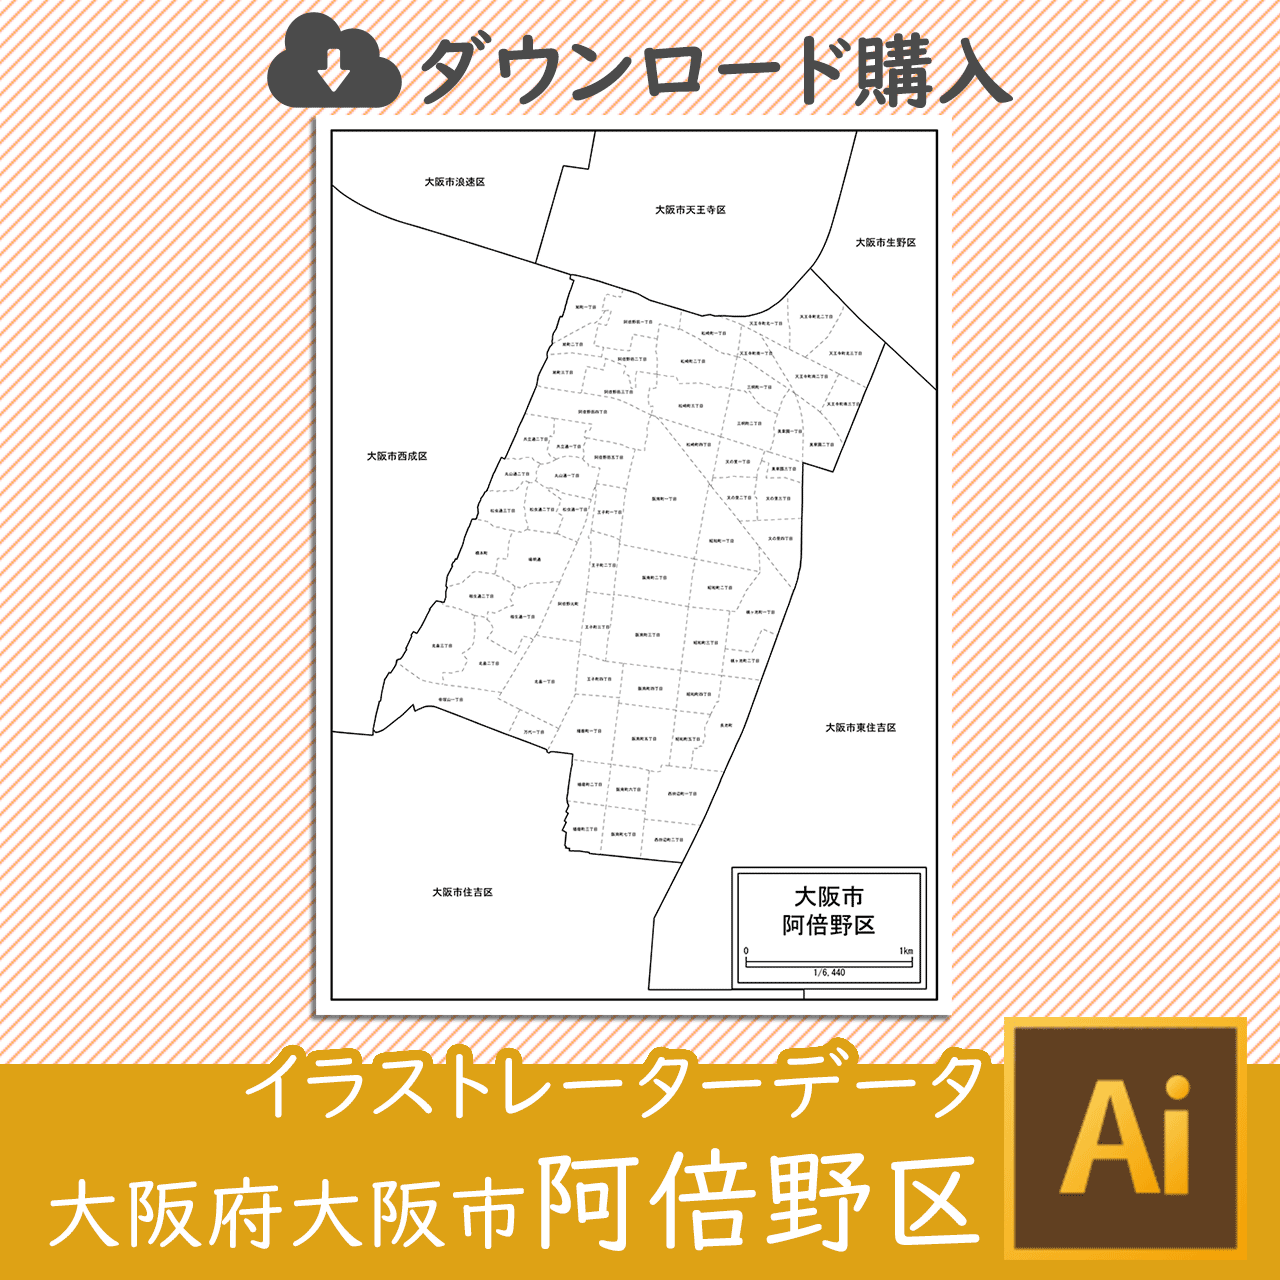 大阪市阿倍野区の白地図のサムネイル画像